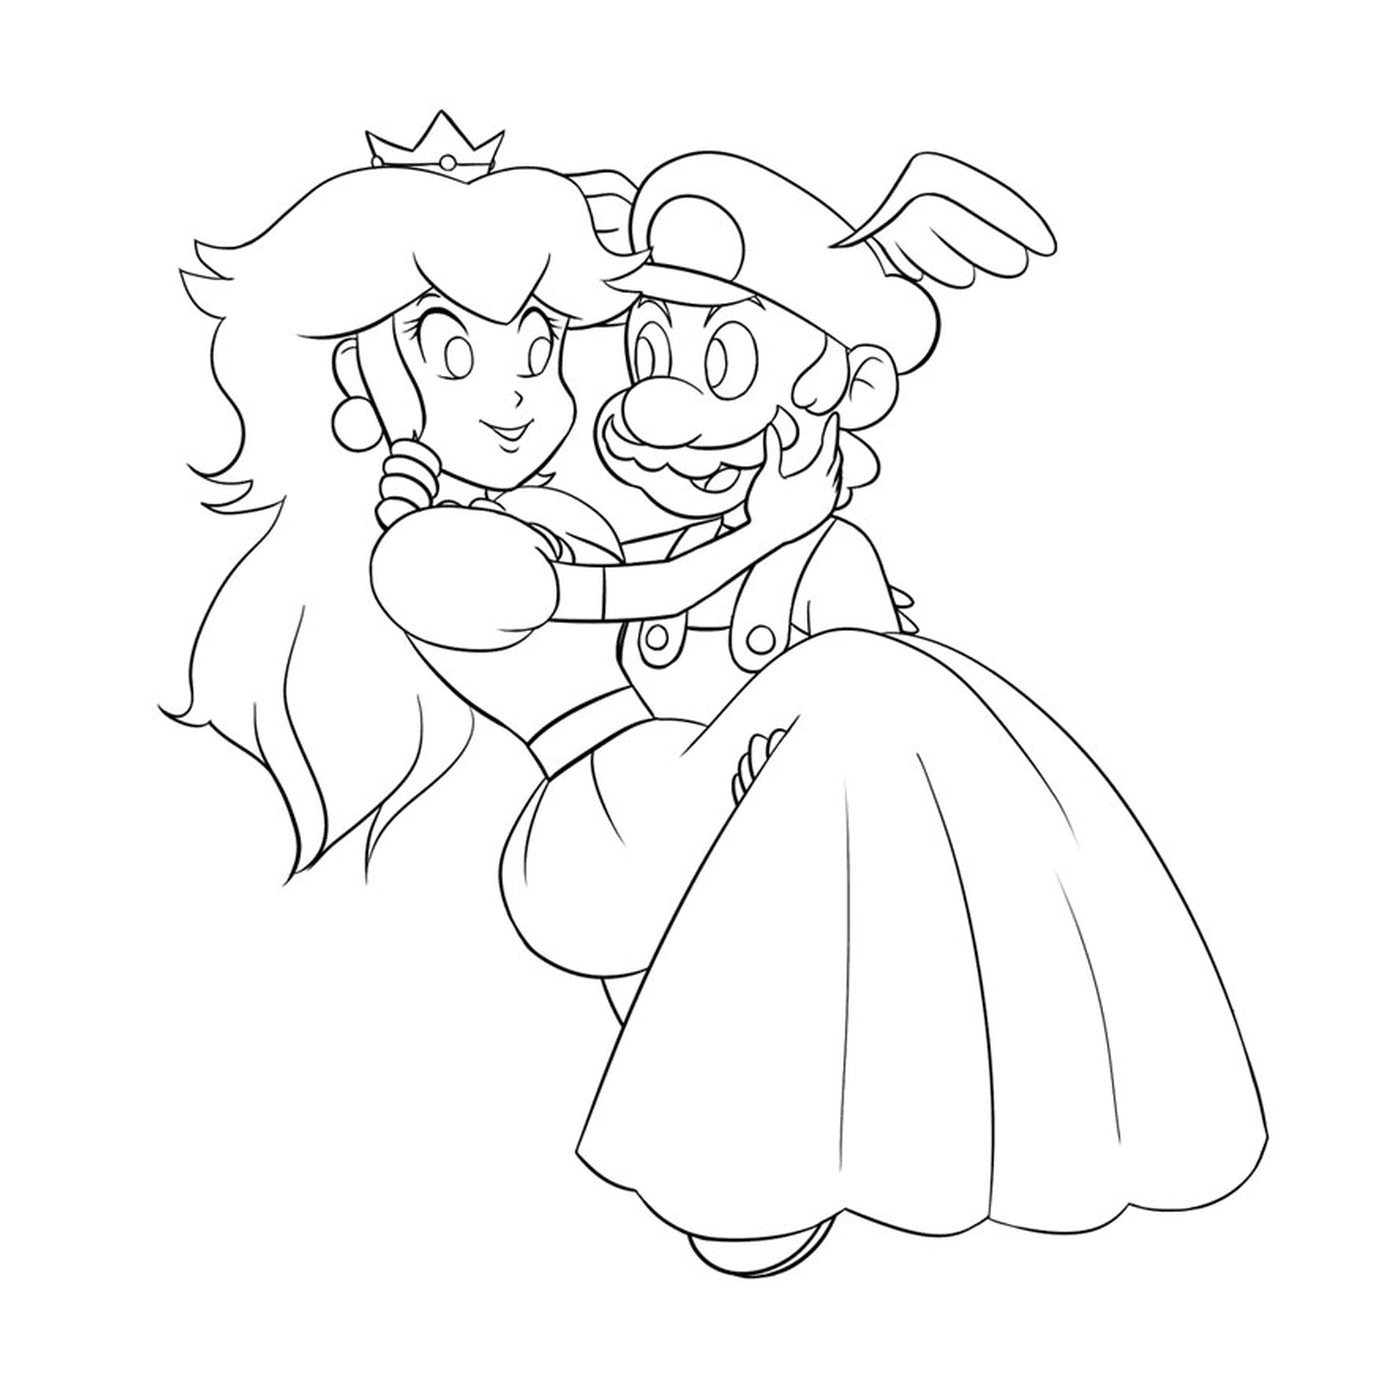  Mario e la principessa 